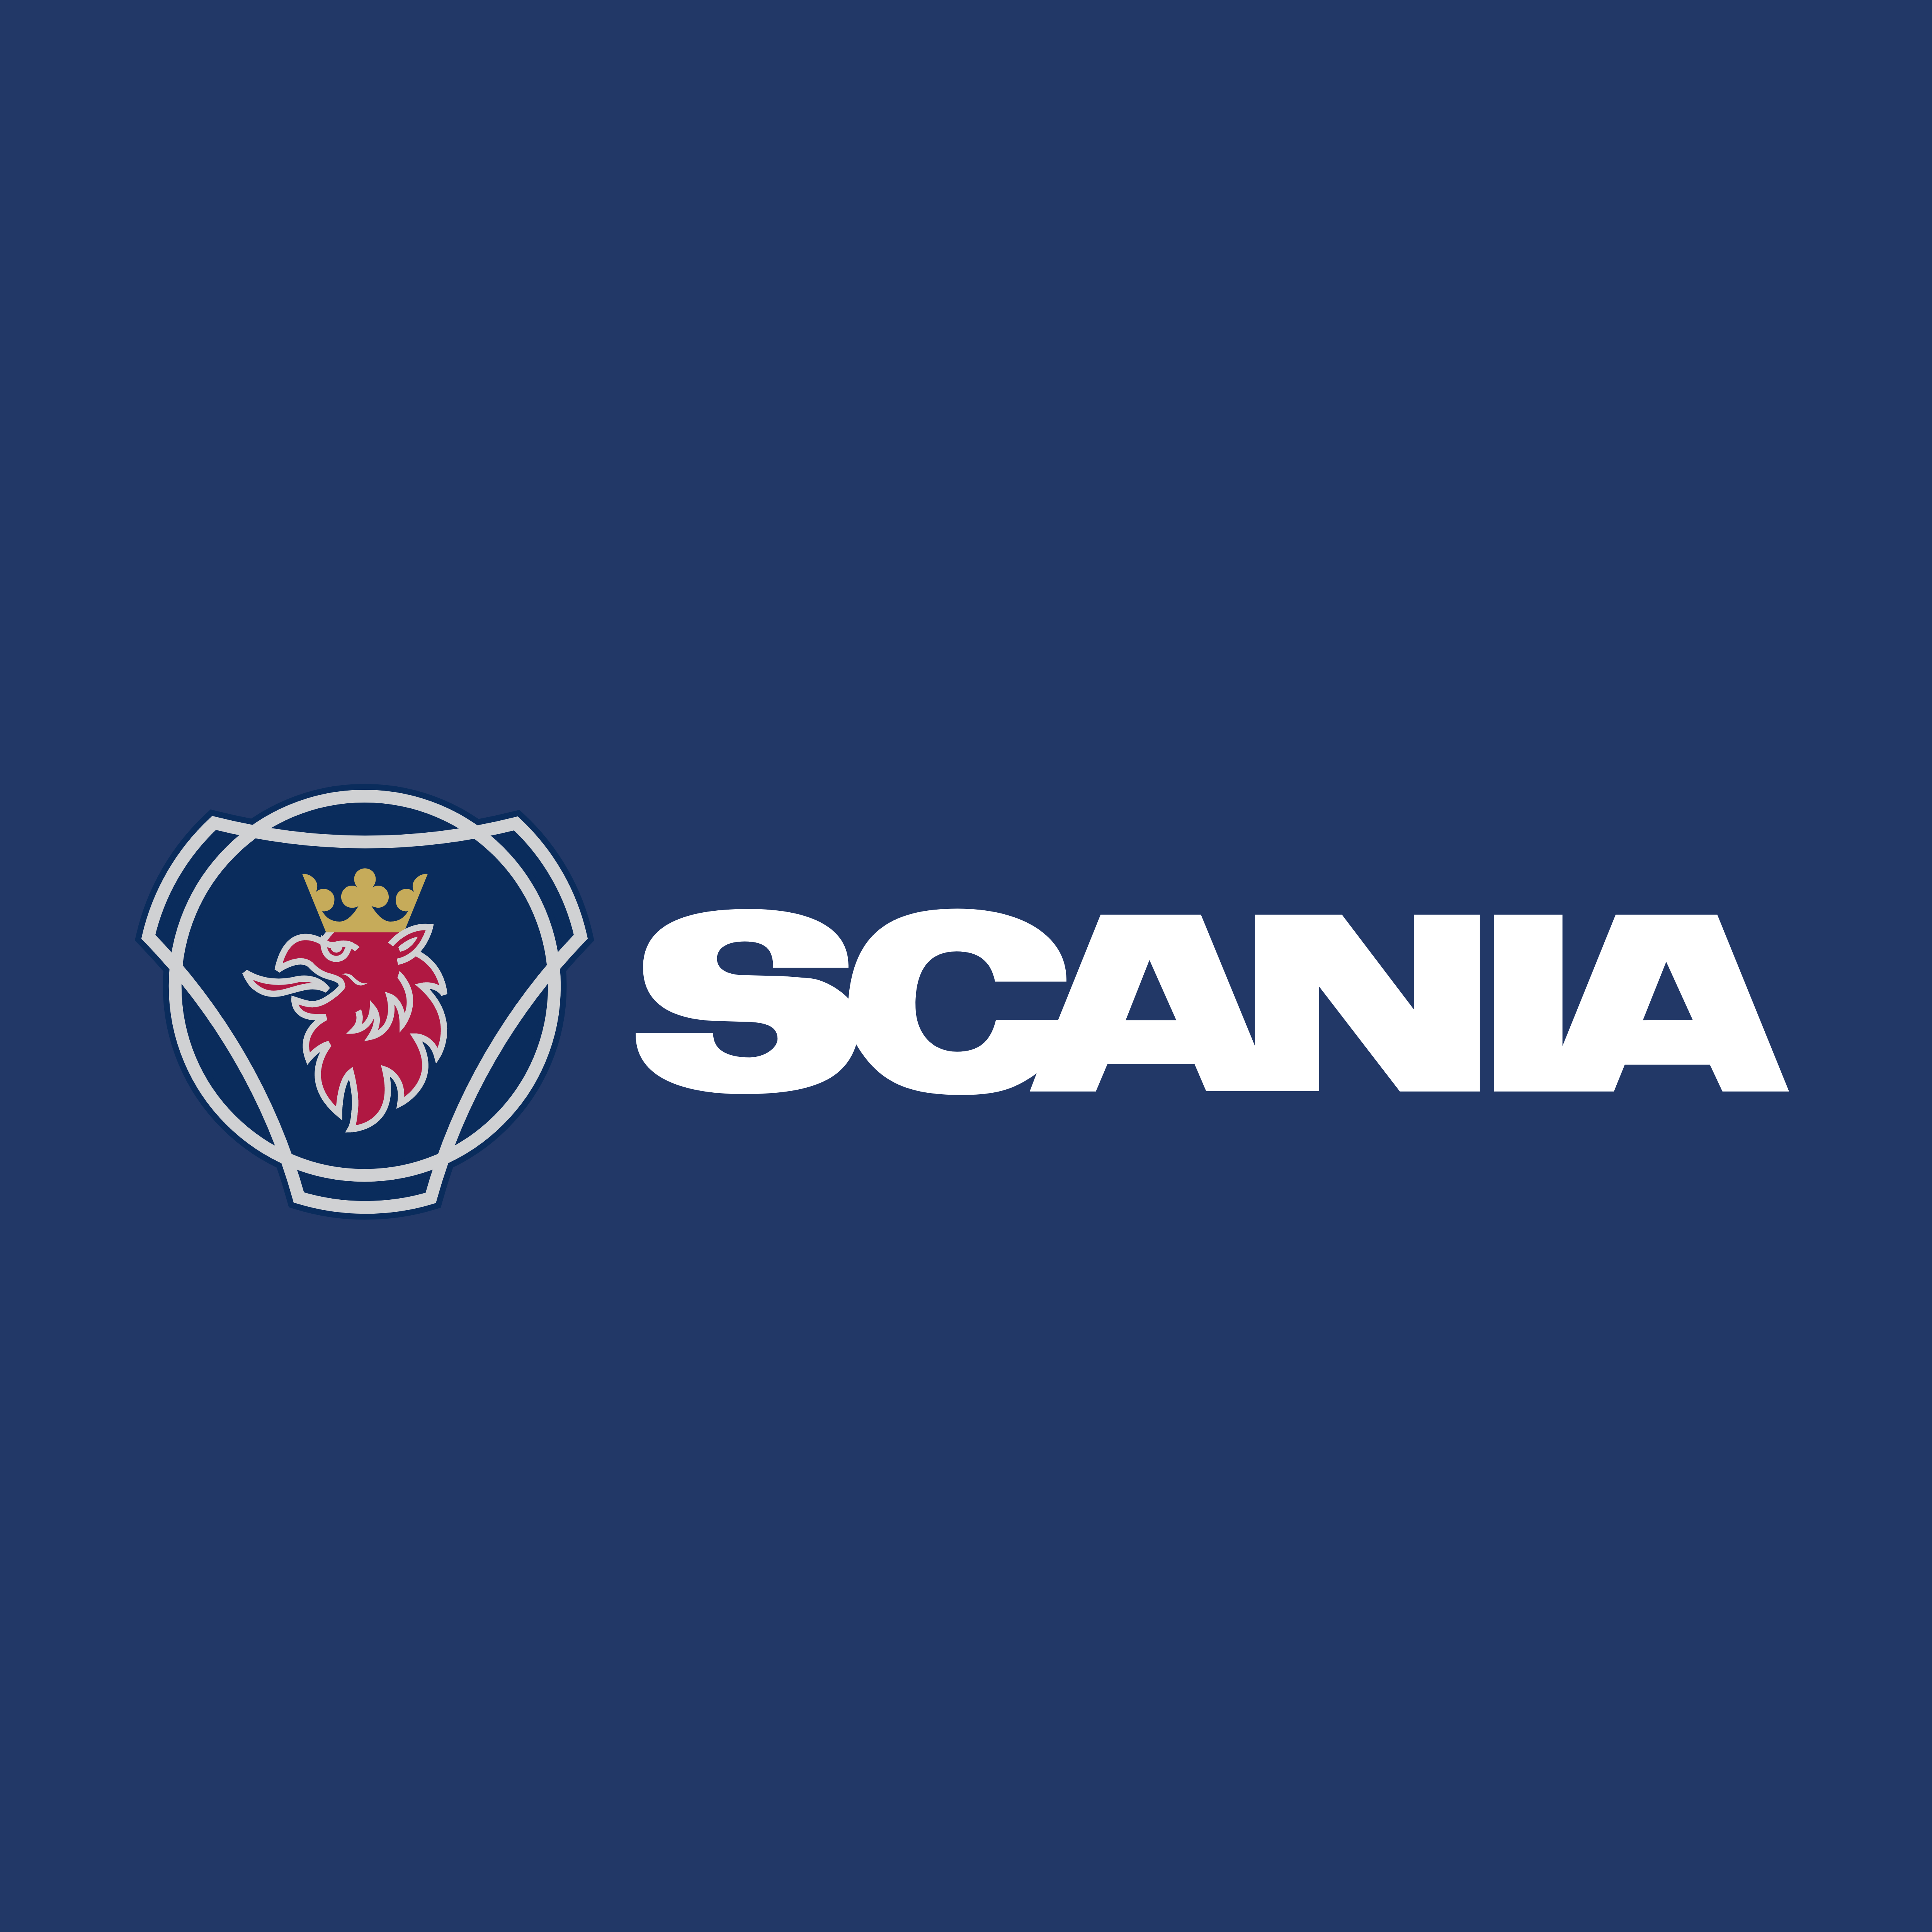 Логотип скания. Эмблема Скания. Скания логотип вектор. Логотип Скания r480. Scania надпись.